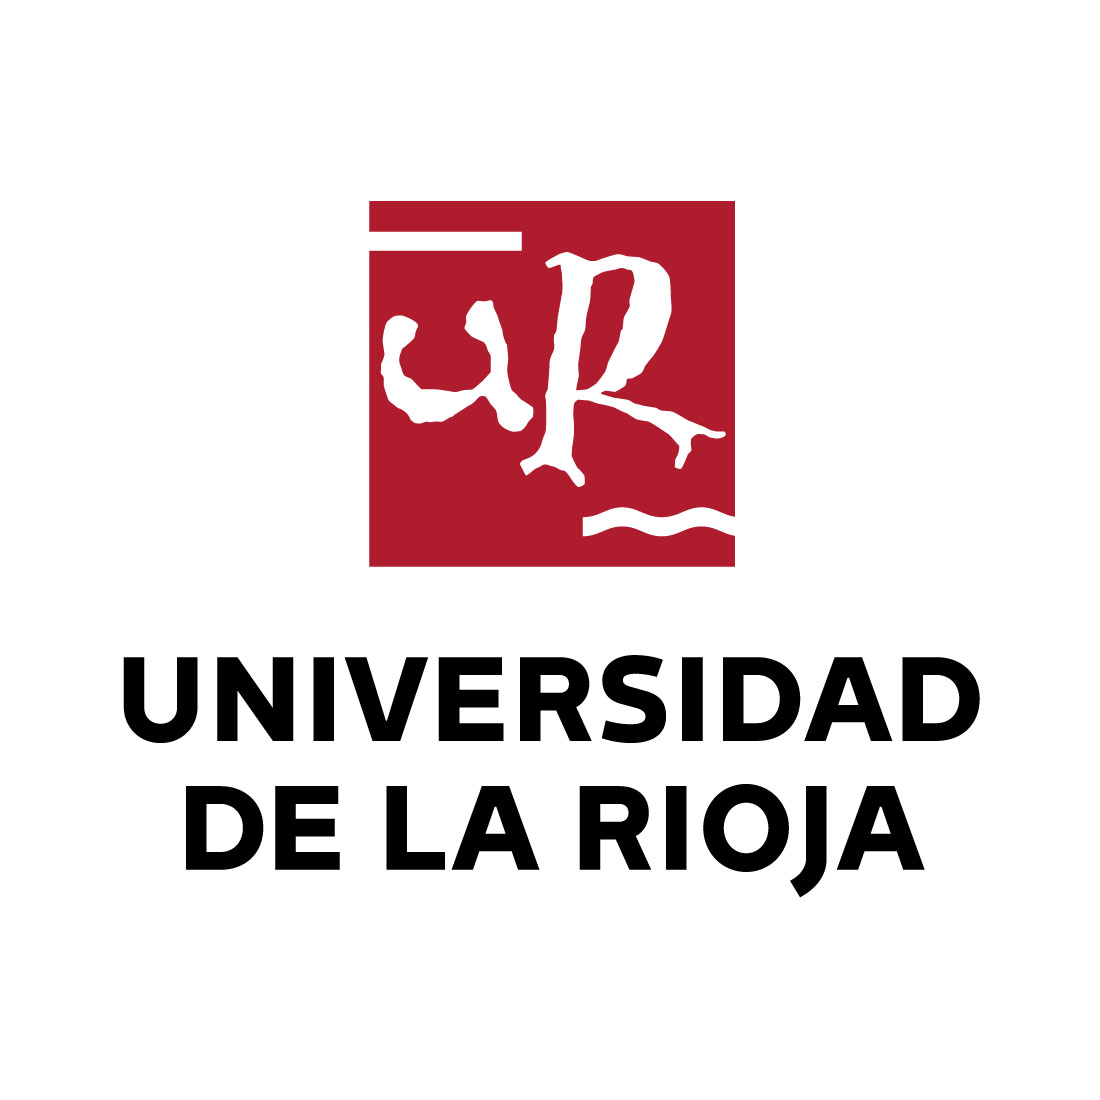 University of La Rioja  